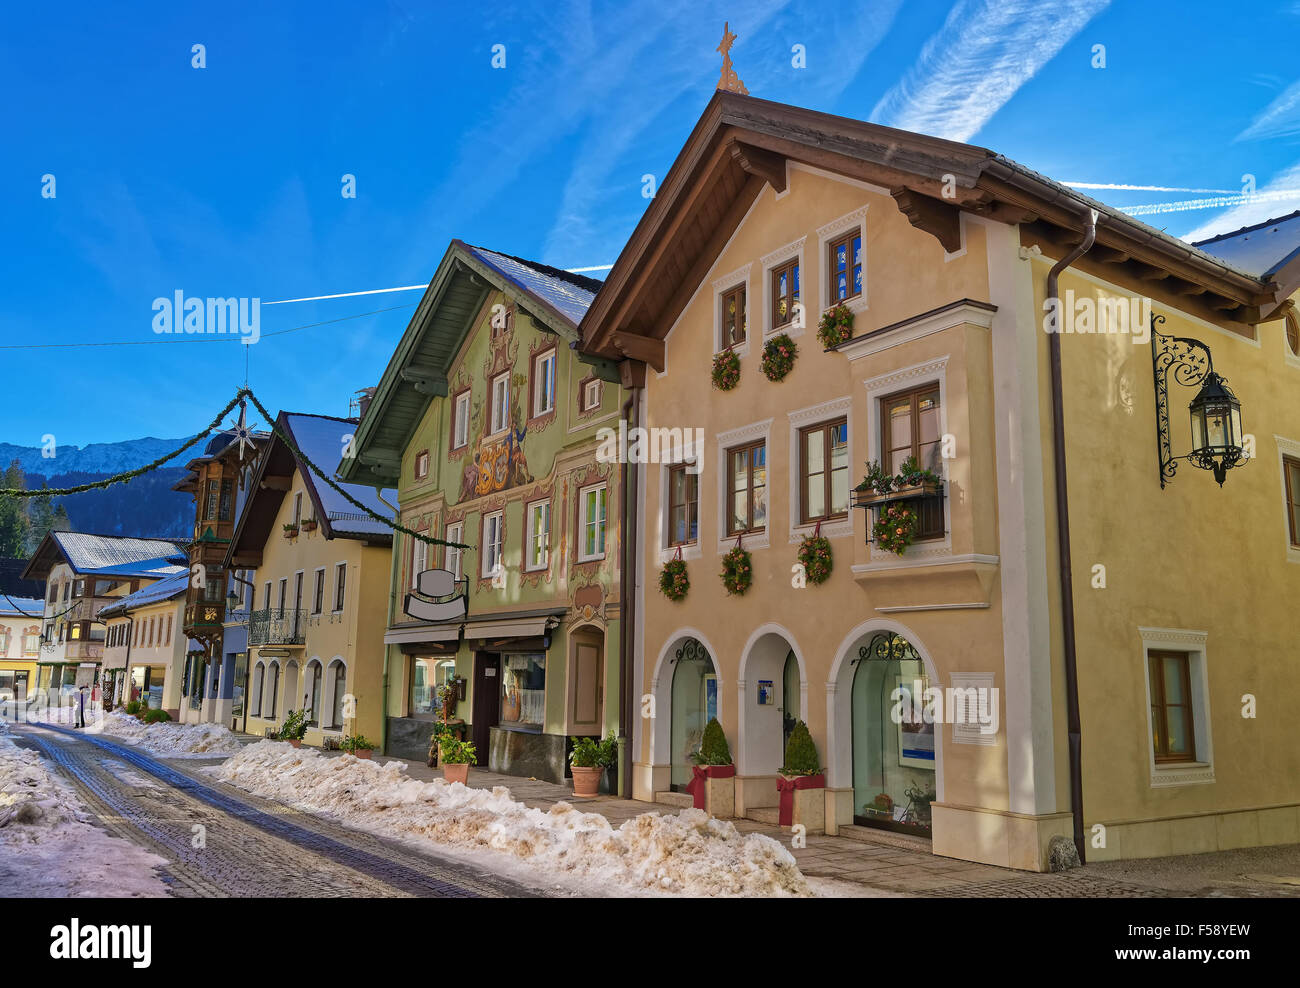 Casas con encanto en aldea Bávara de Garmisch-Partenkirchen (Alemania), decorado para la Navidad. Los bávaros tienen una larga historia de decorar las fachadas de sus casas. Foto de stock